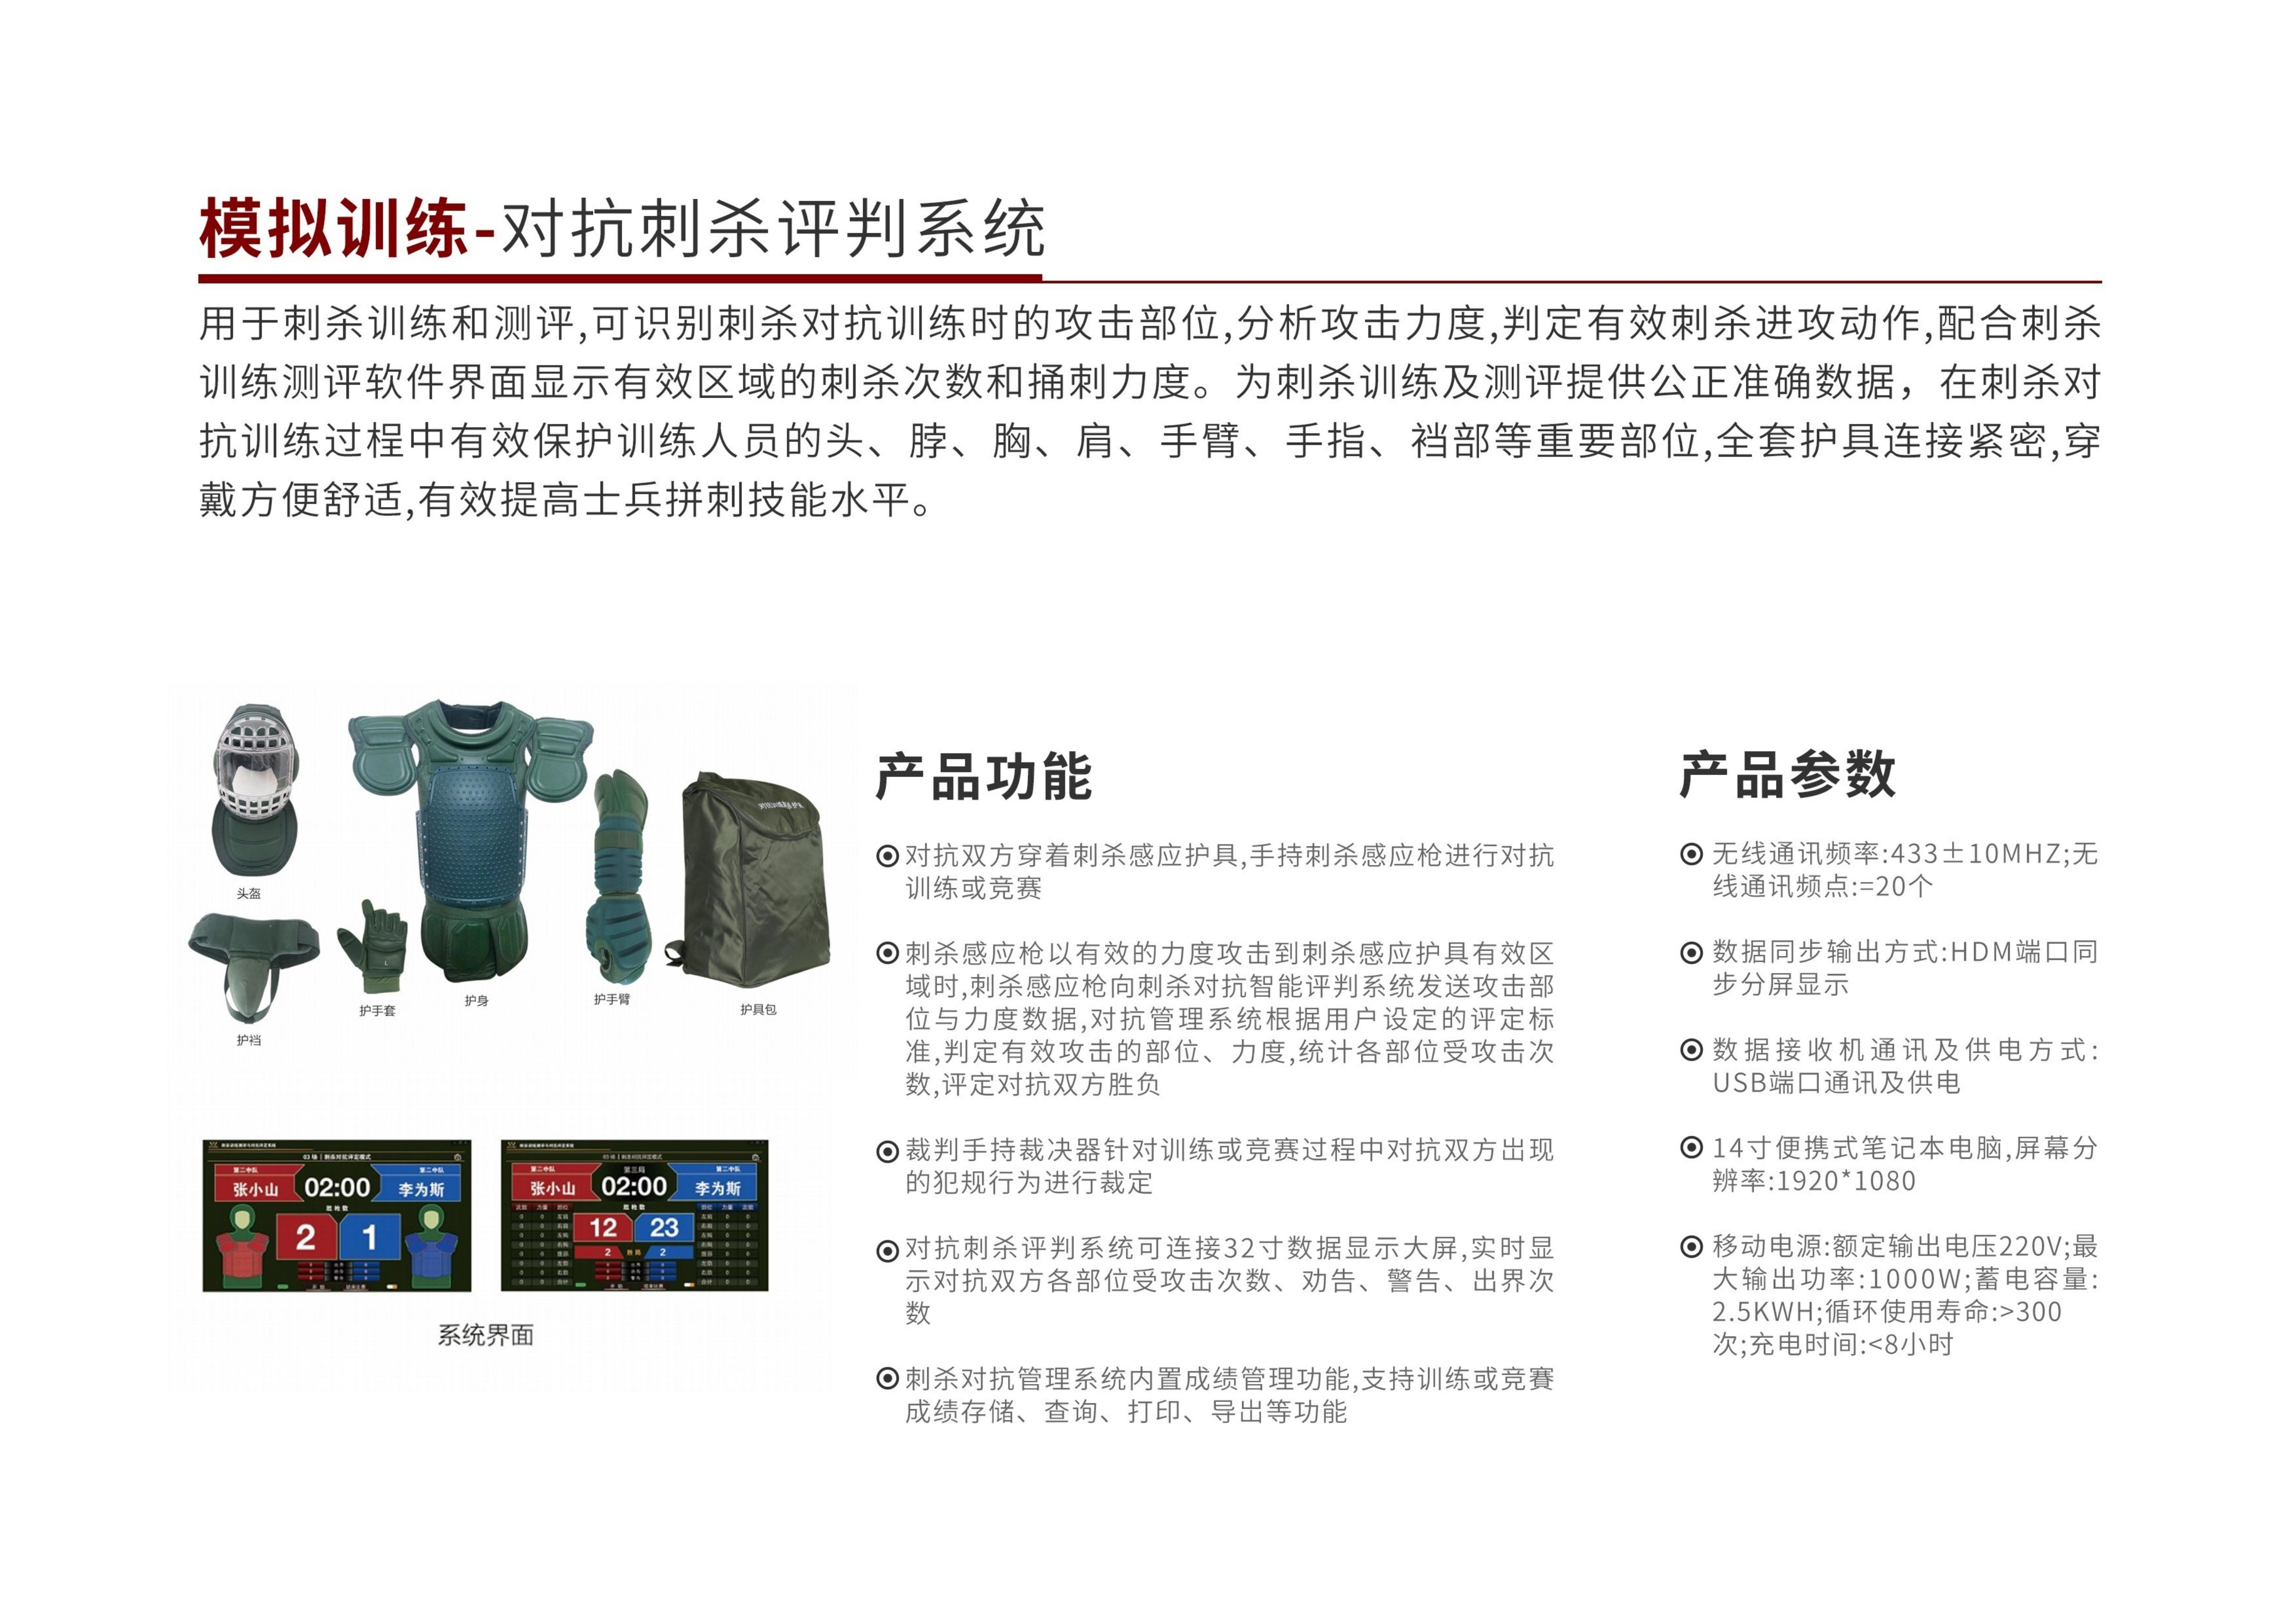 烽火星晖公司产品宣传手册V2.0版-20211210_11.jpg